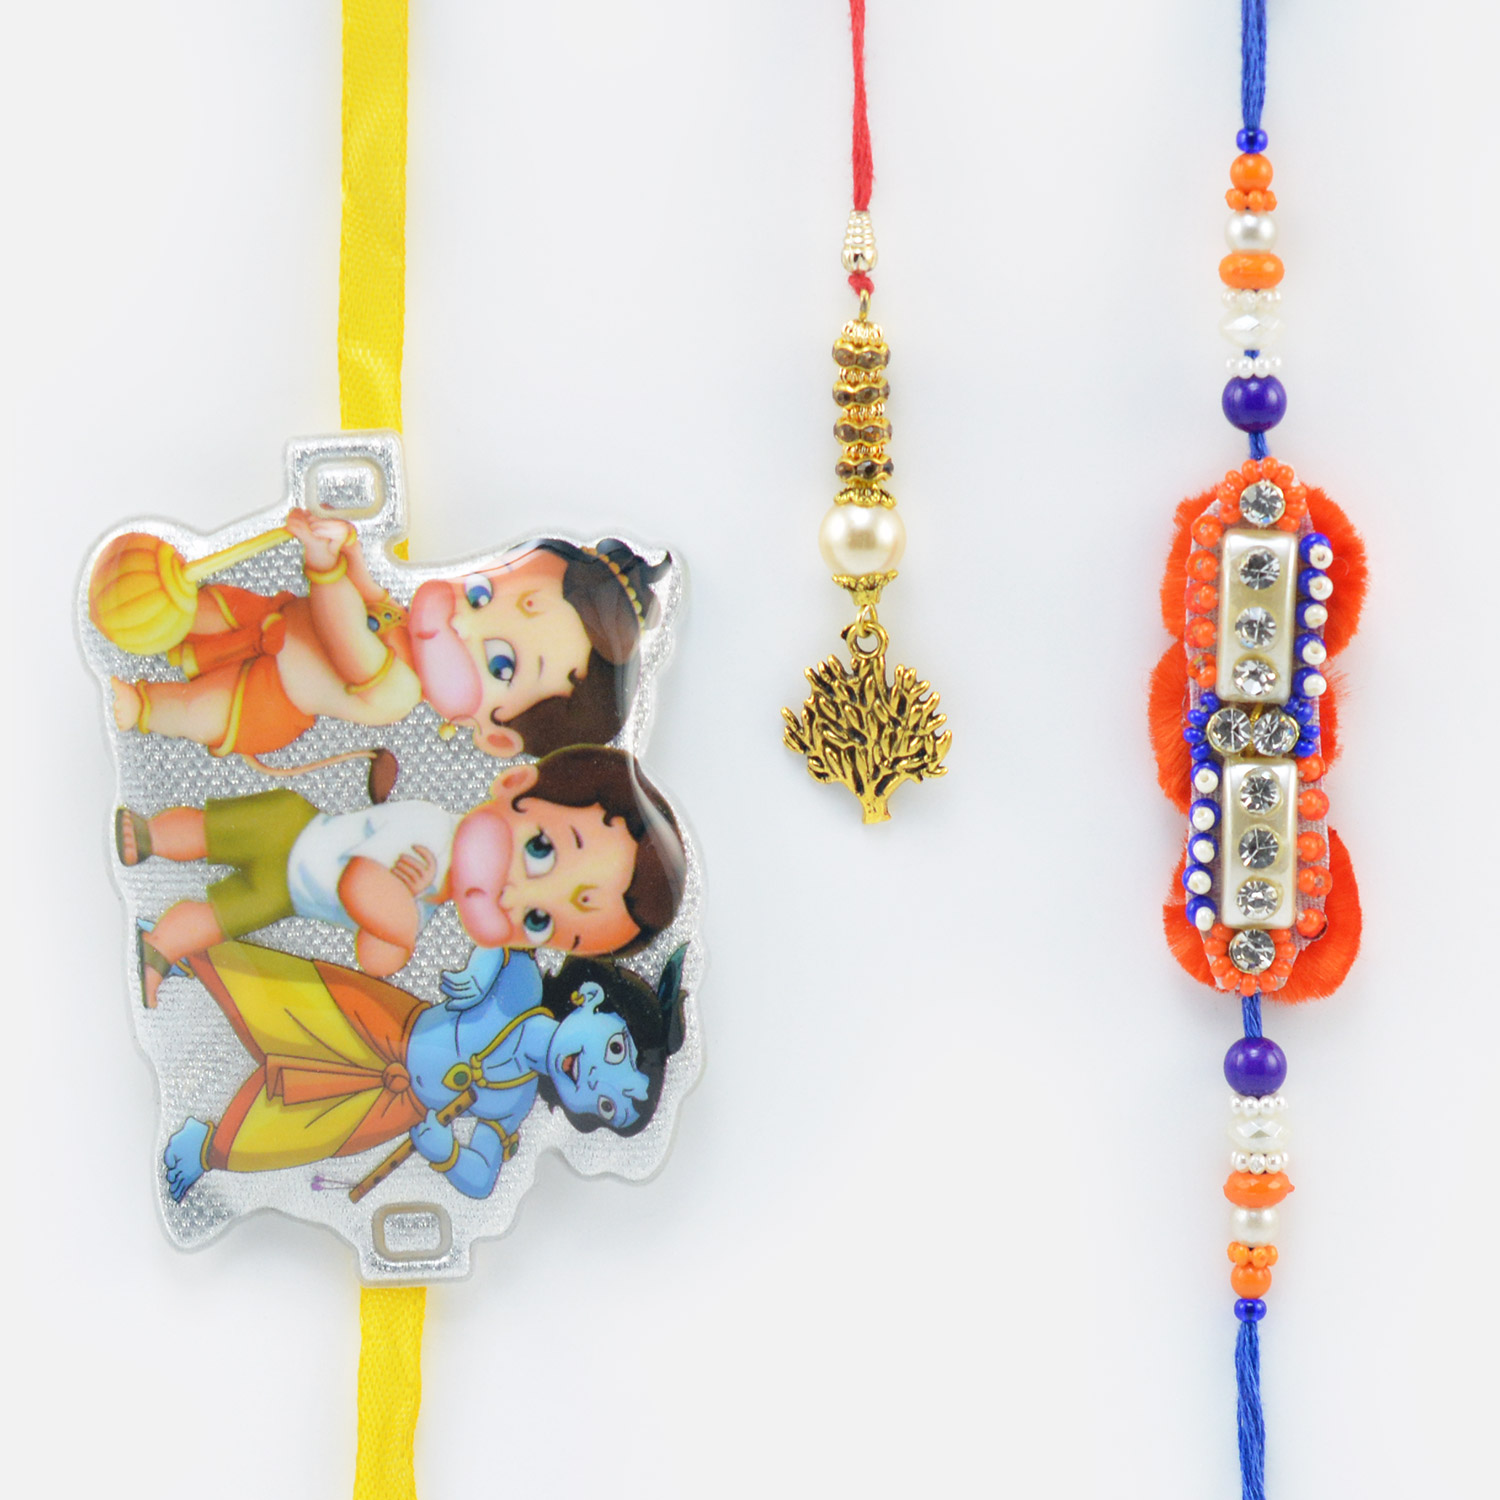 Ganesha Hanuman Rakhi for Kid with a Lumba and Rakhi for Brother Set of 3 Rakhis.